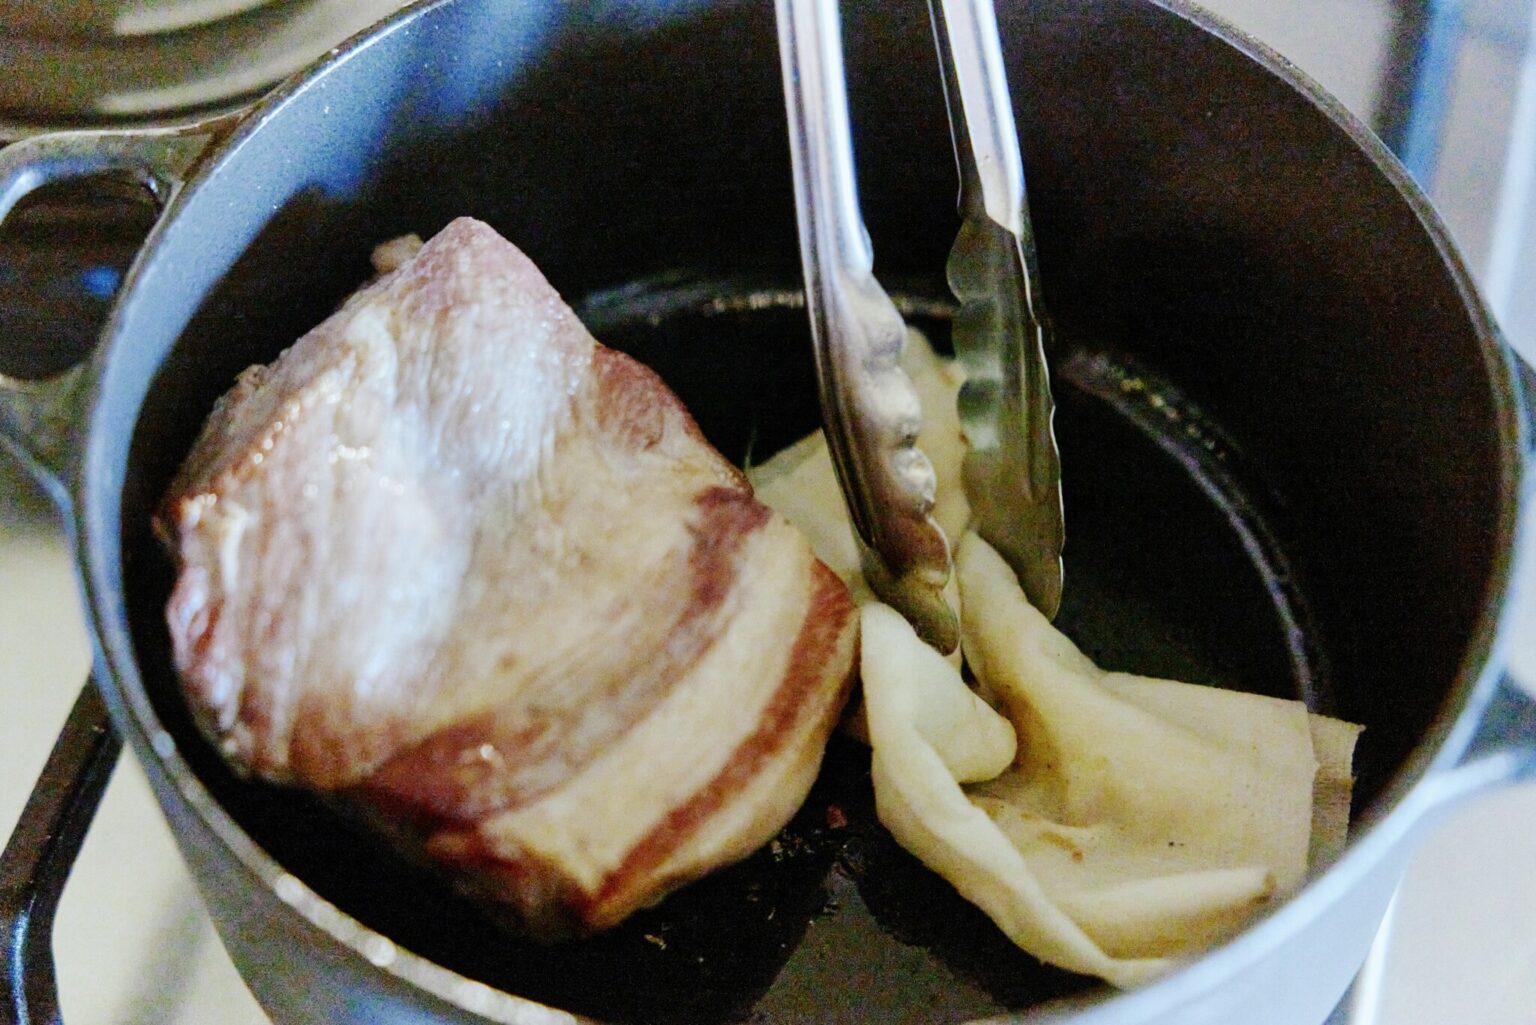 POINT：豚肉を焼いたあと、鍋に残った脂をしっかりとふき取れば、余計な匂いや味が残らない。